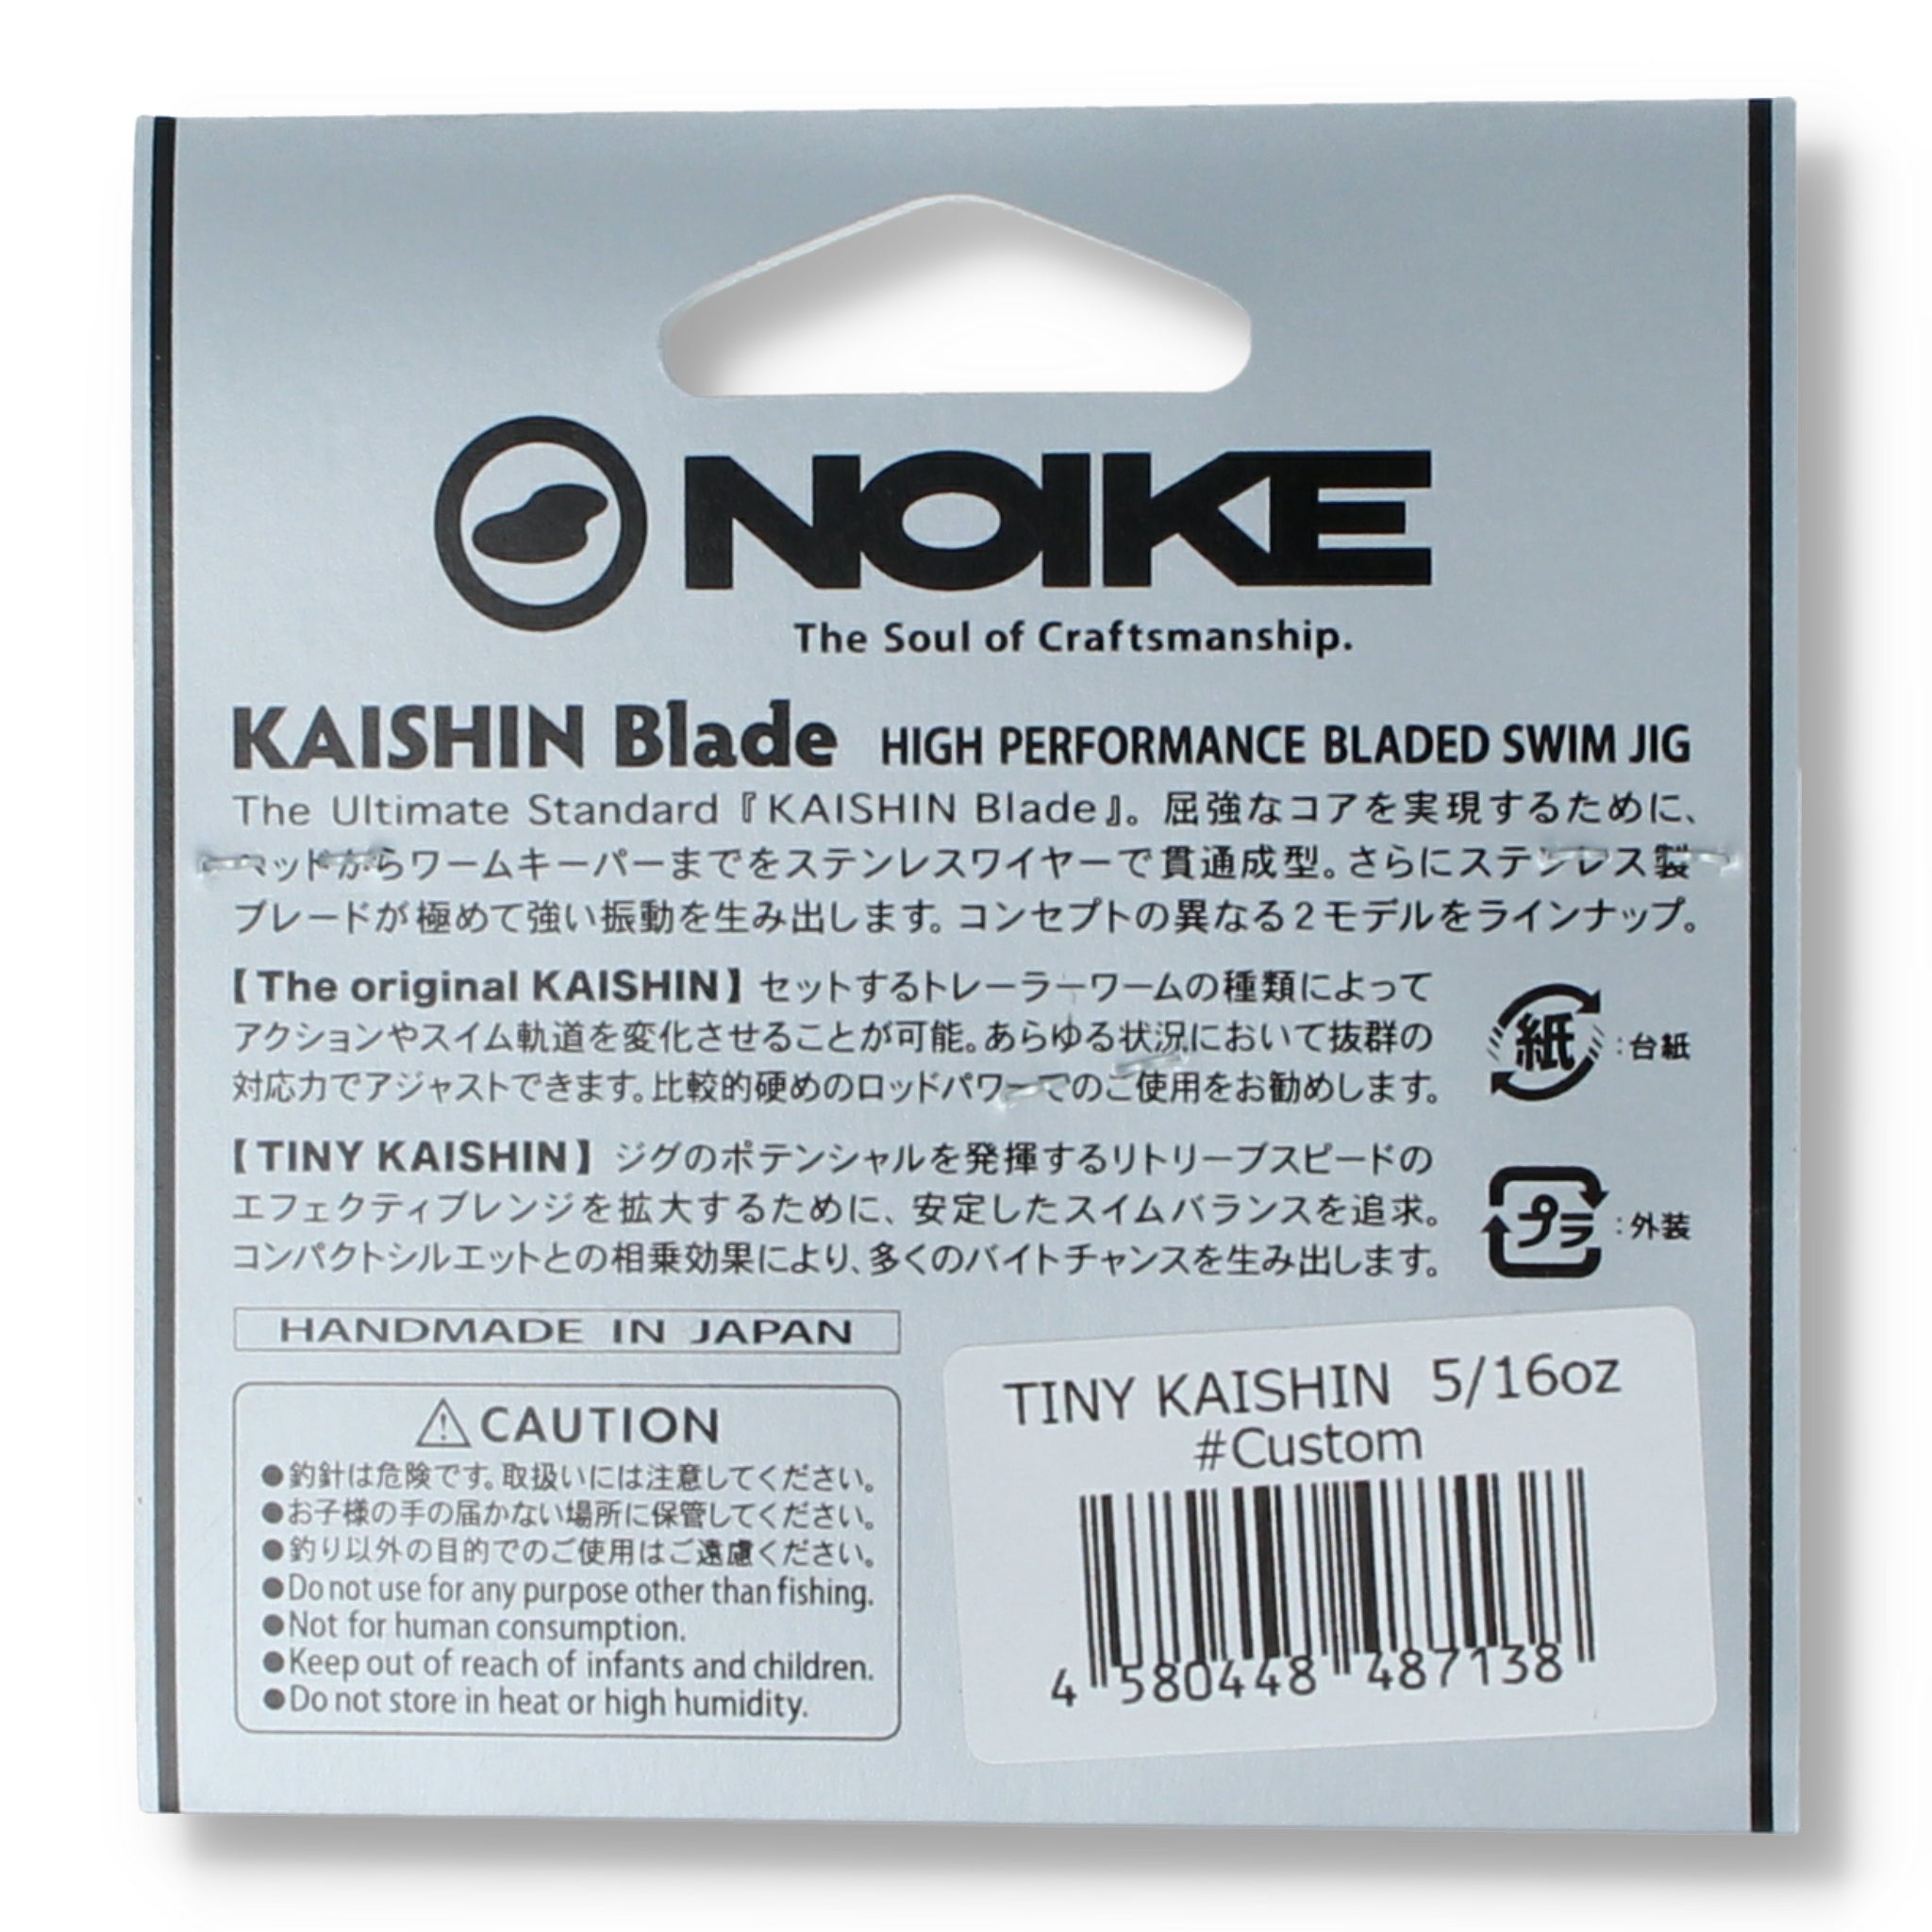 Noike Tiny Kaishin Blade 9g